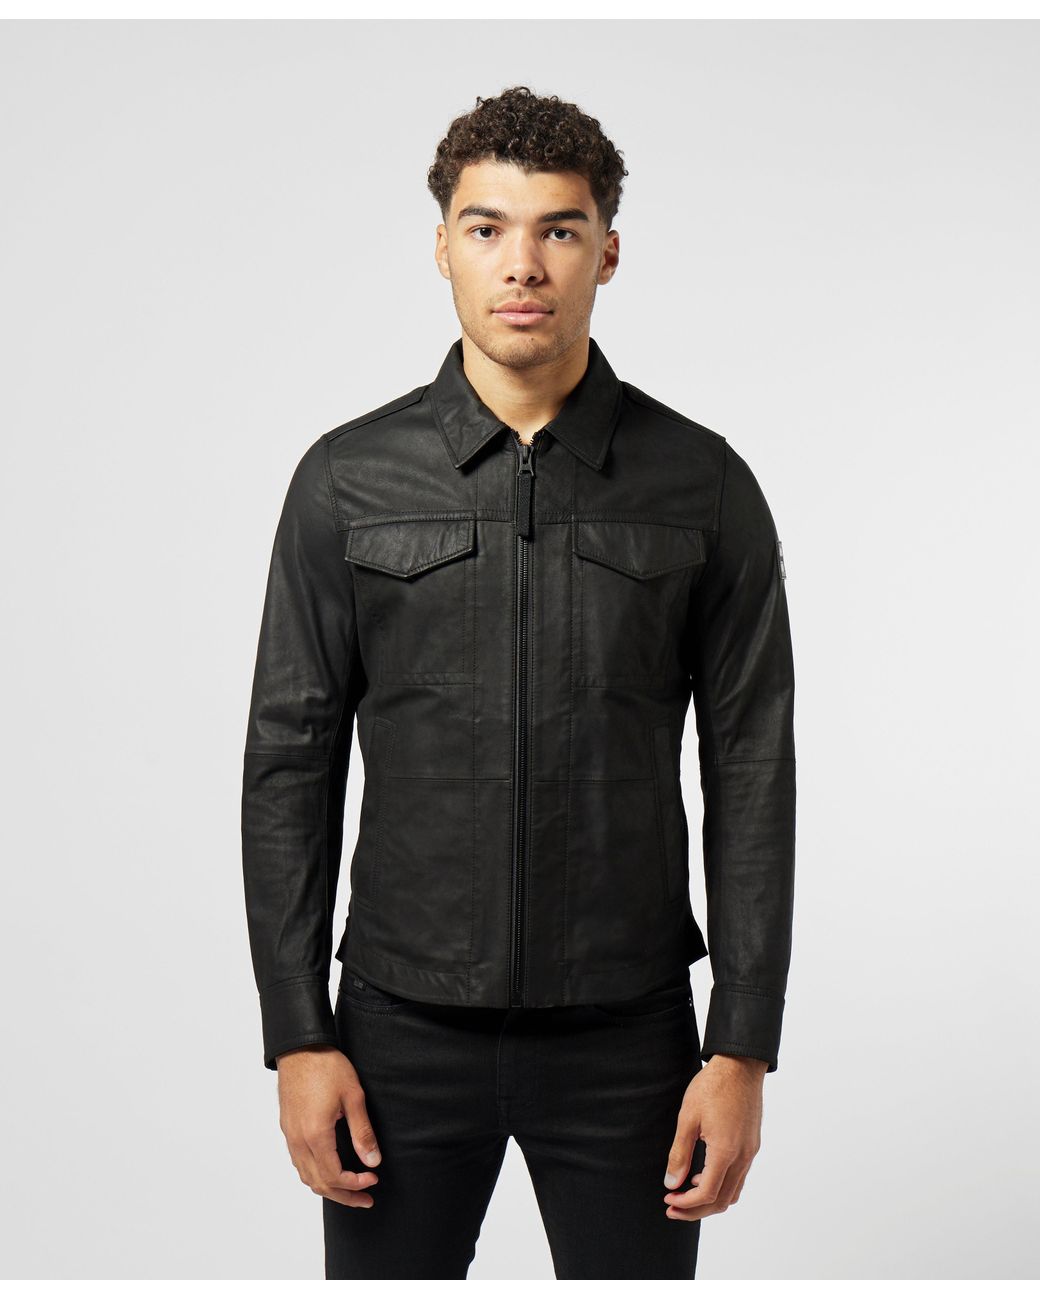 BOSS by HUGO BOSS Jobean Leather Overshirt in Black for Men | Lyst